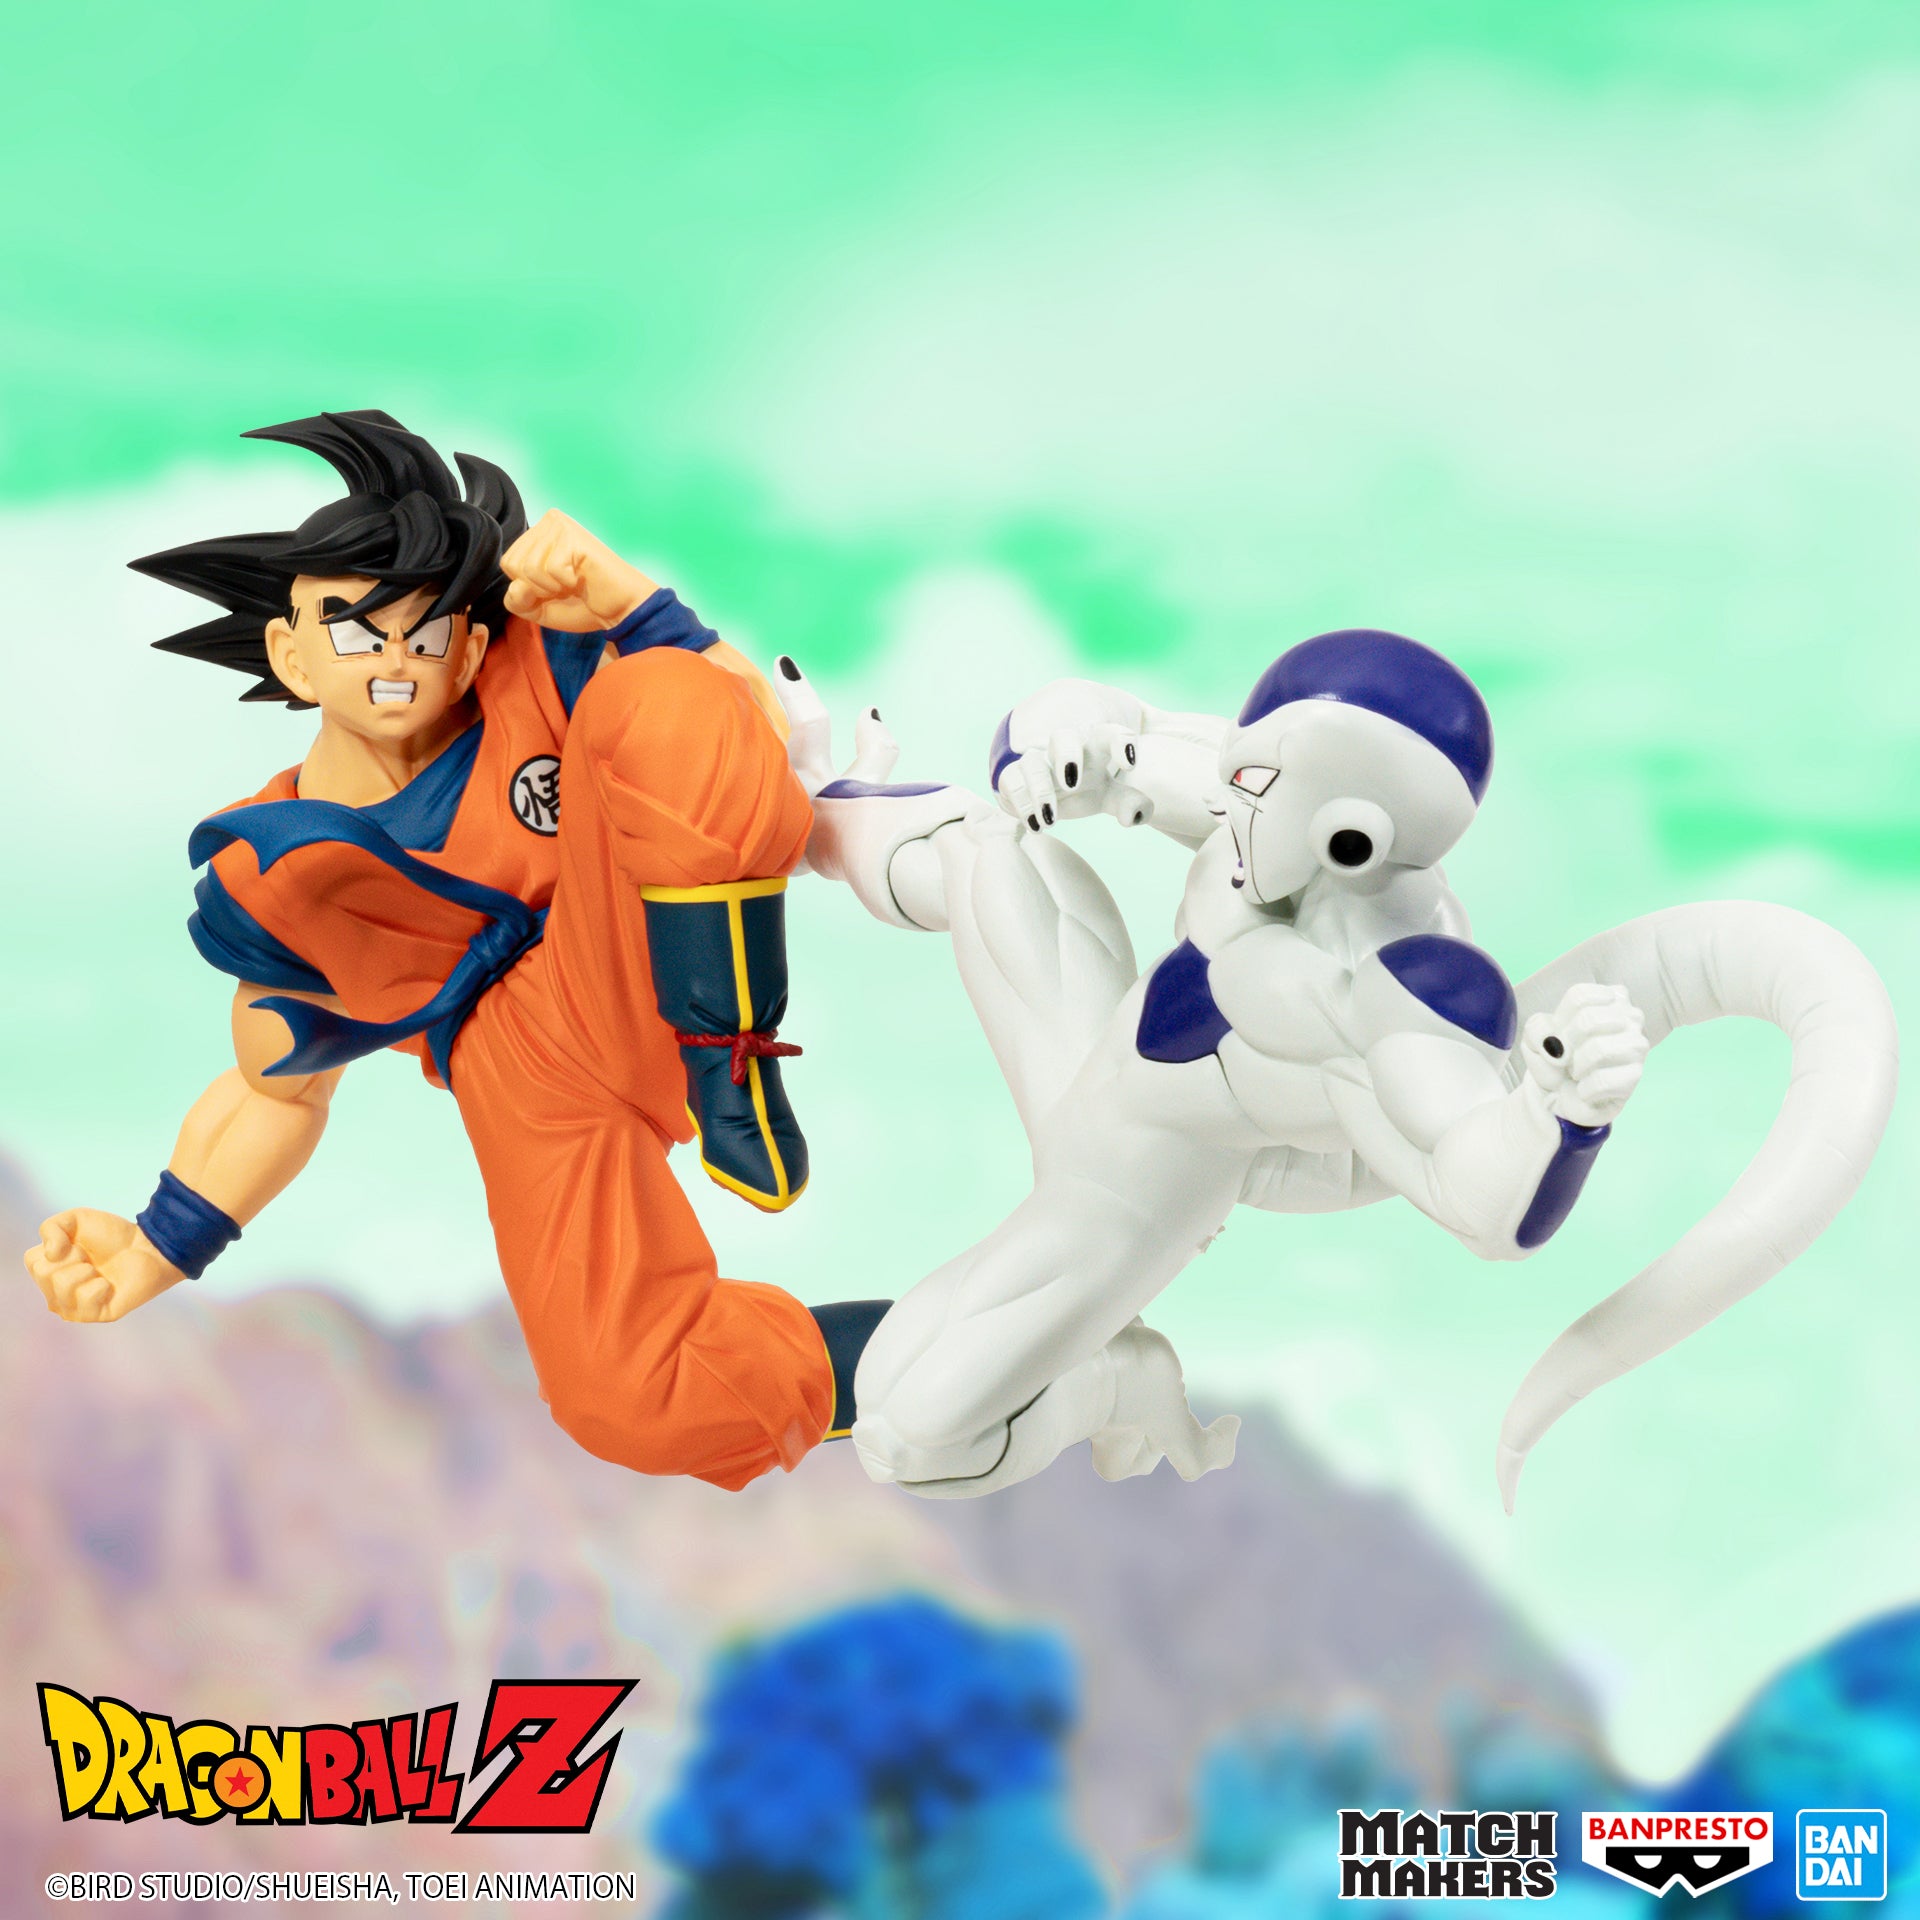 Banpresto Match Makes: Dragon Ball Z - Goku